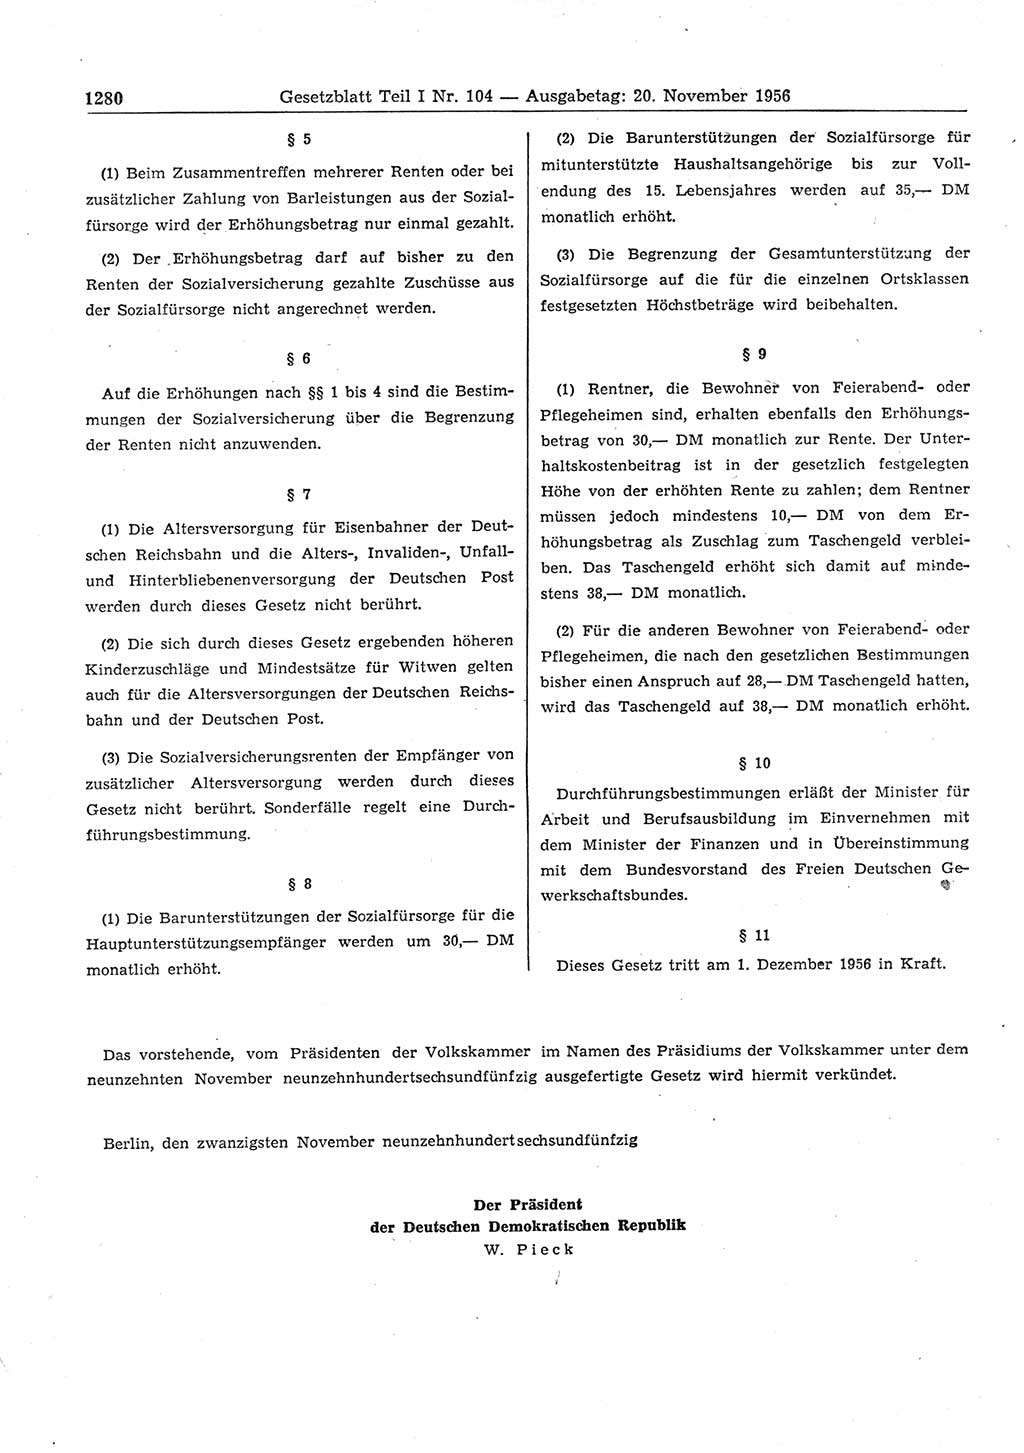 Gesetzblatt (GBl.) der Deutschen Demokratischen Republik (DDR) Teil Ⅰ 1956, Seite 1280 (GBl. DDR Ⅰ 1956, S. 1280)